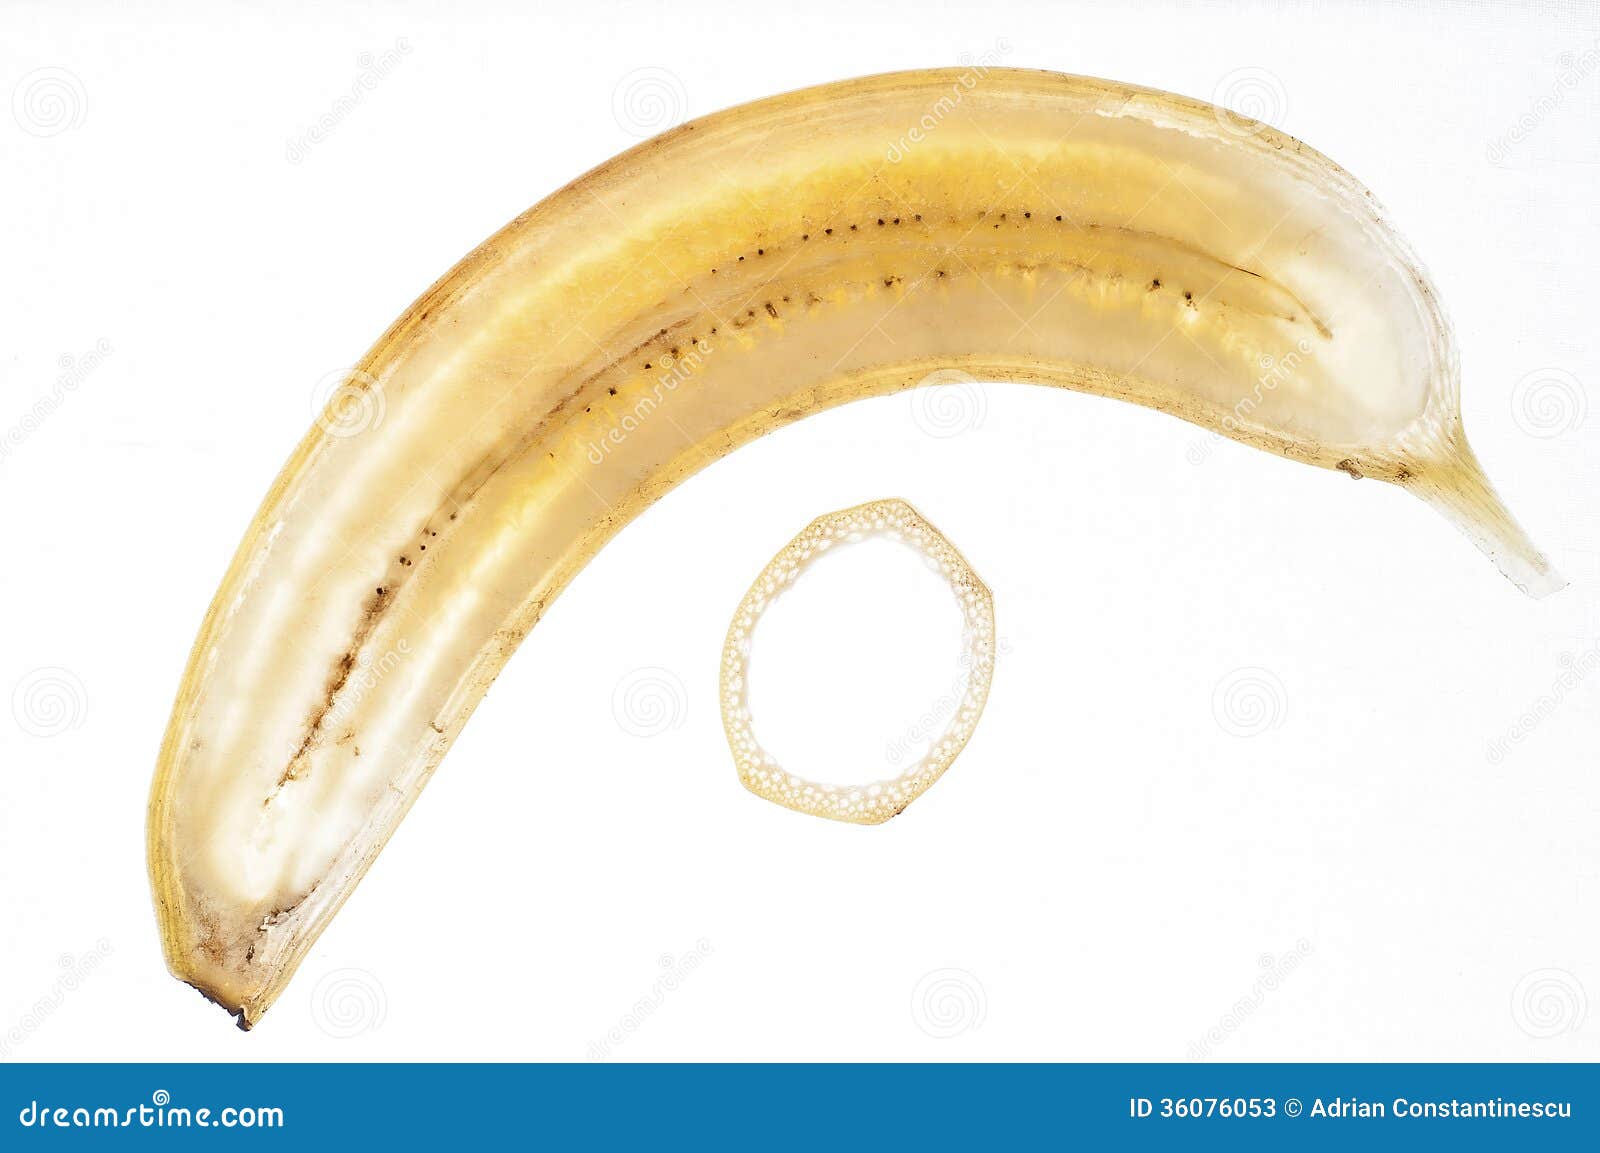 Сколько весит банан без кожуры в среднем. Продольный срез банана. Белые точки на кожуре банана. Вес банана без кожуры 1 шт. Кусочки банана в 7 месяцев.